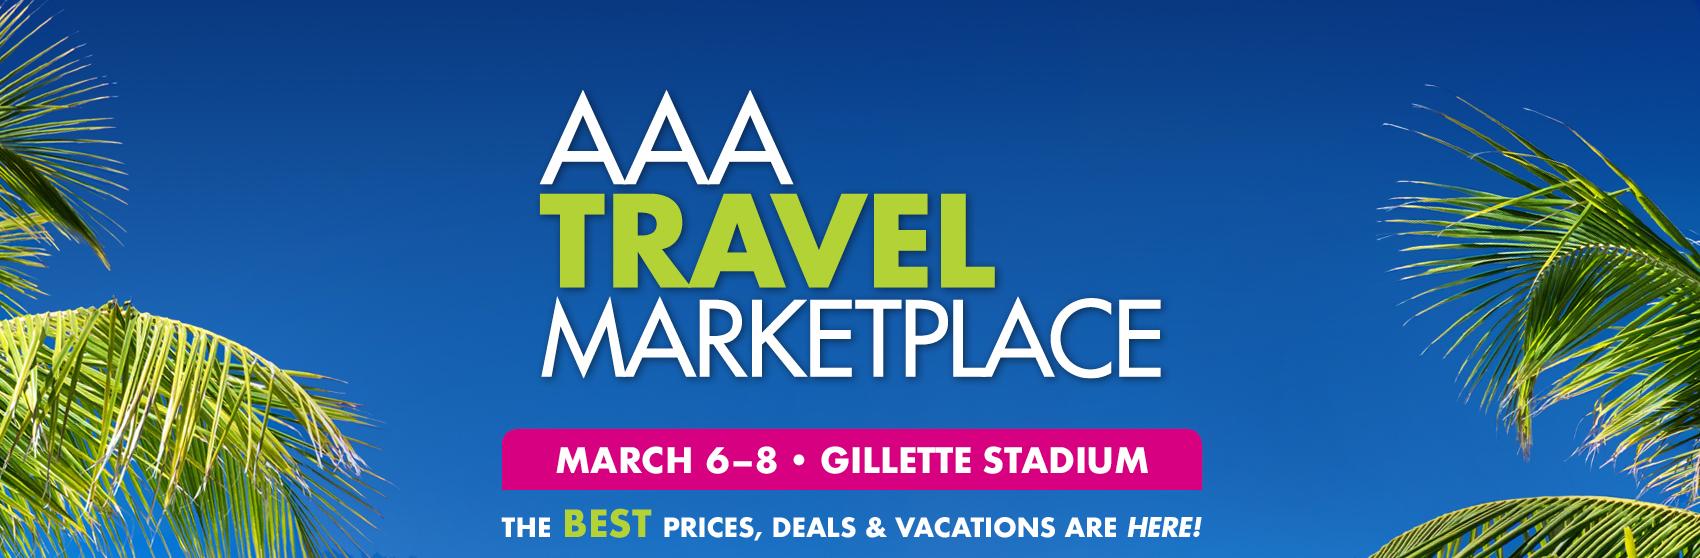 AAA Travel Marketplace